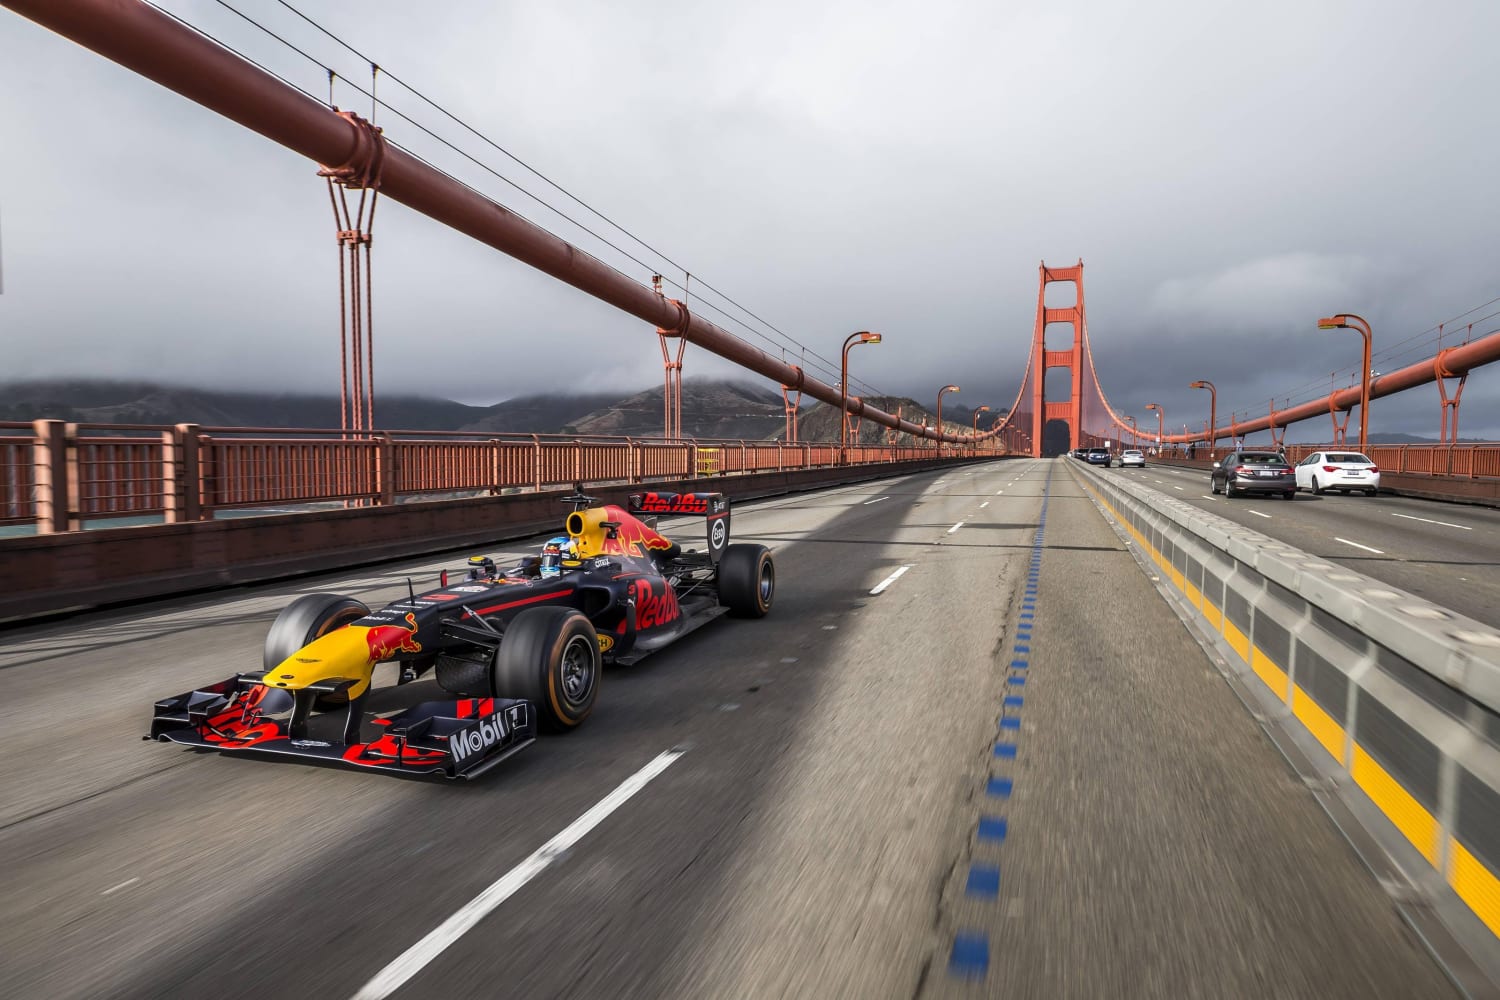 Red Bull Racing's road